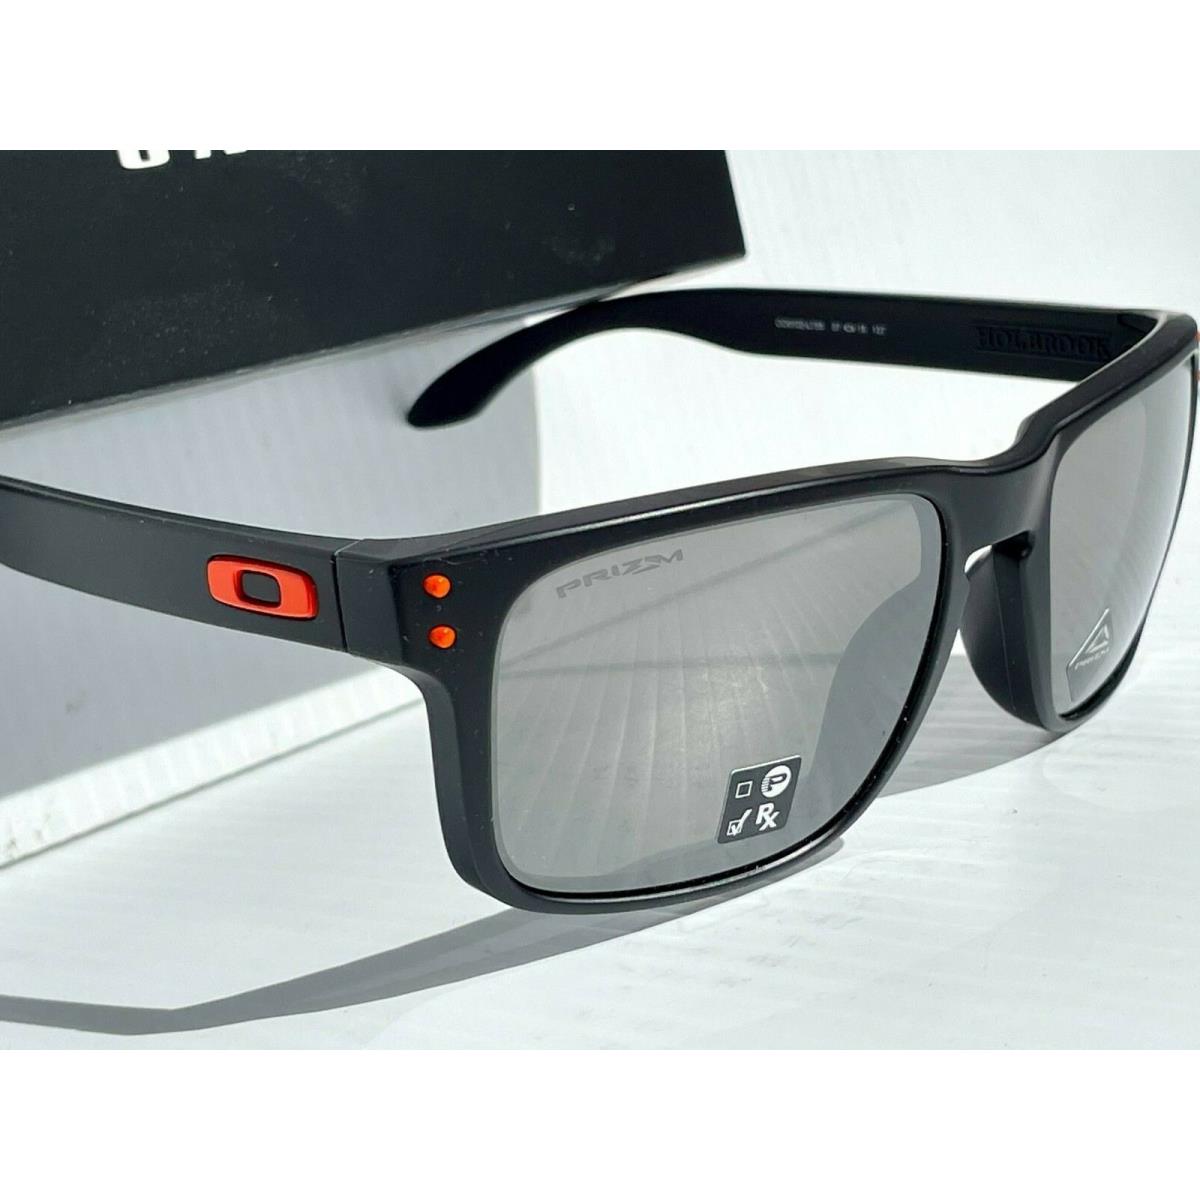 Oakley sunglasses Holbrook - Black Frame, Silver Lens 7